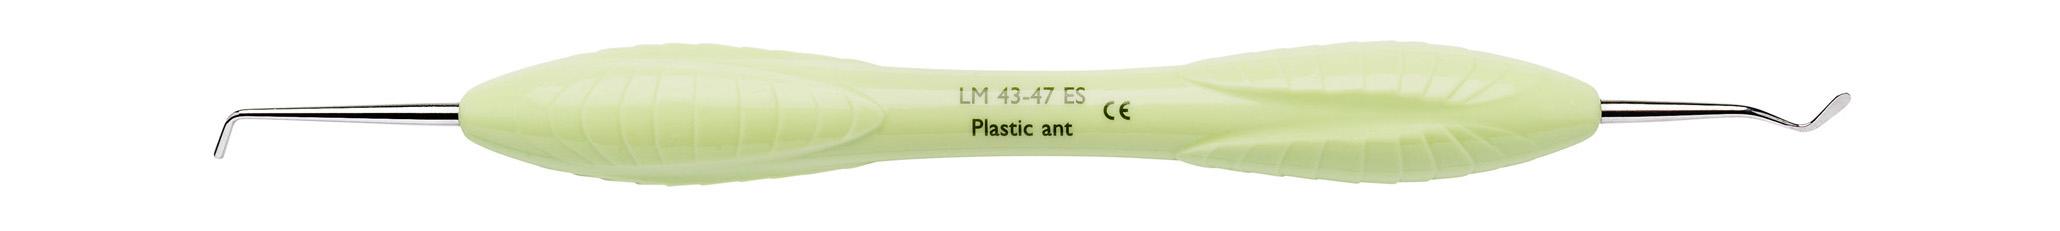 LM Plastic instrument, anterior